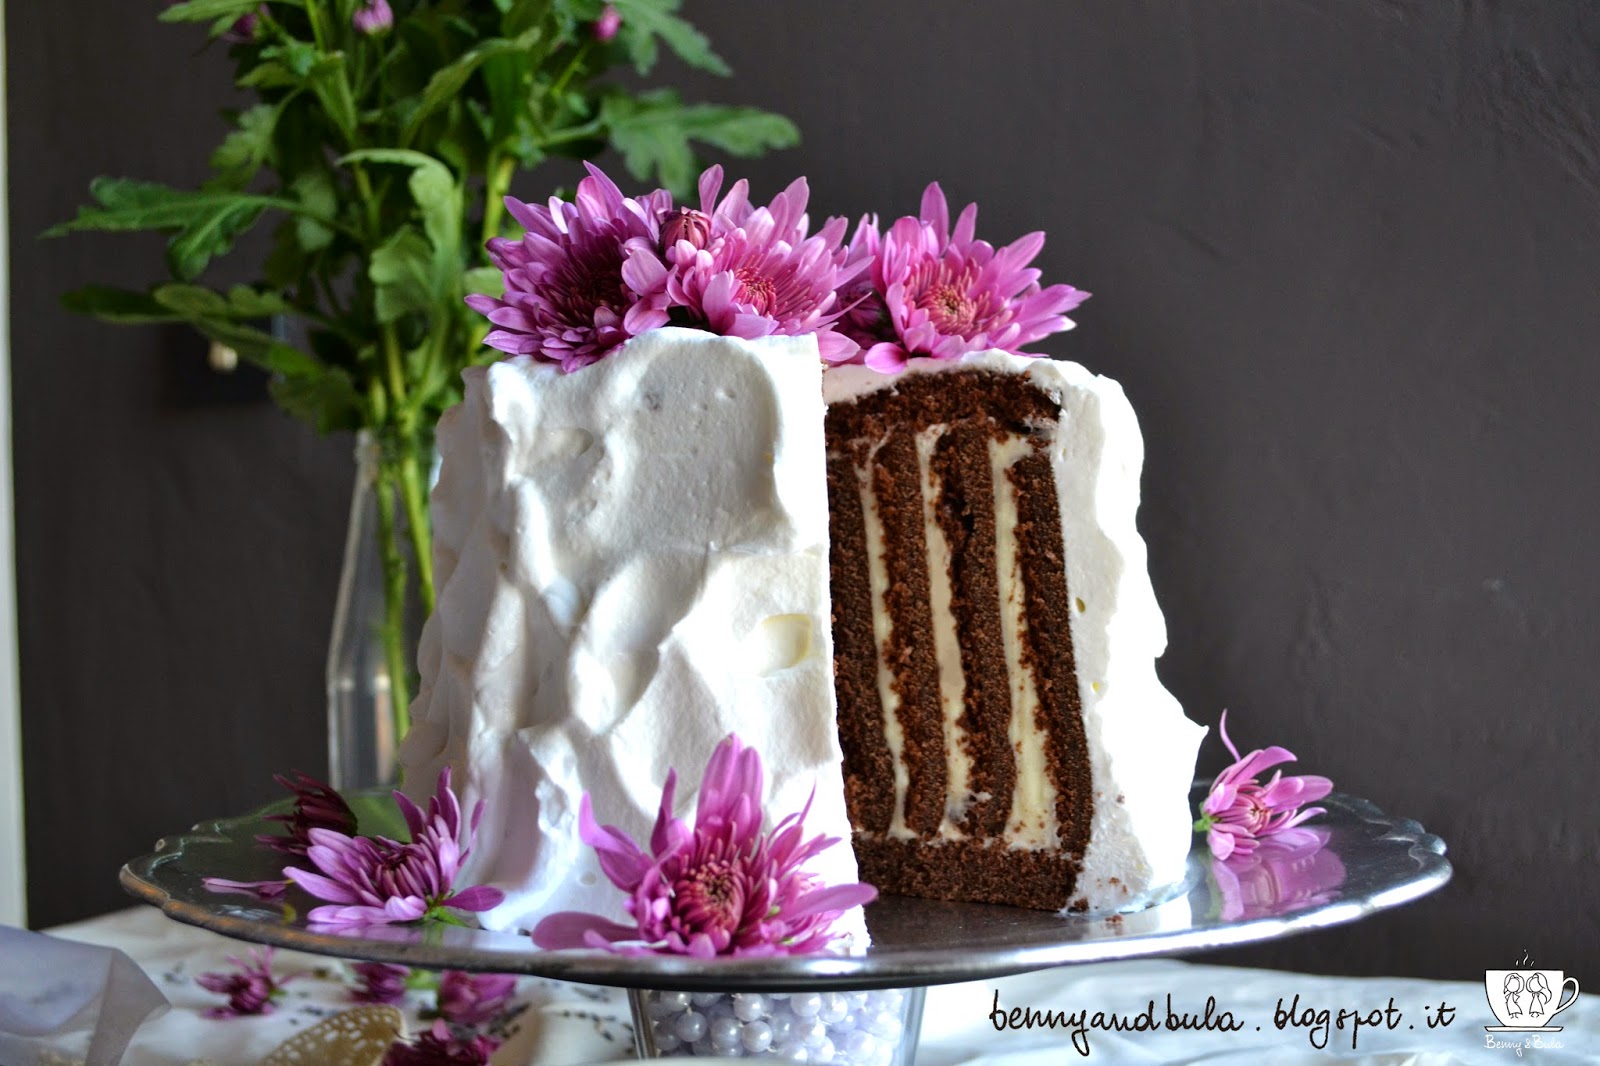 provencal coffee cake recipe with lavender and chocolate, vertical striped/ ricetta torta a strisce verticali con lavanda fondo di caffè e cioccolato